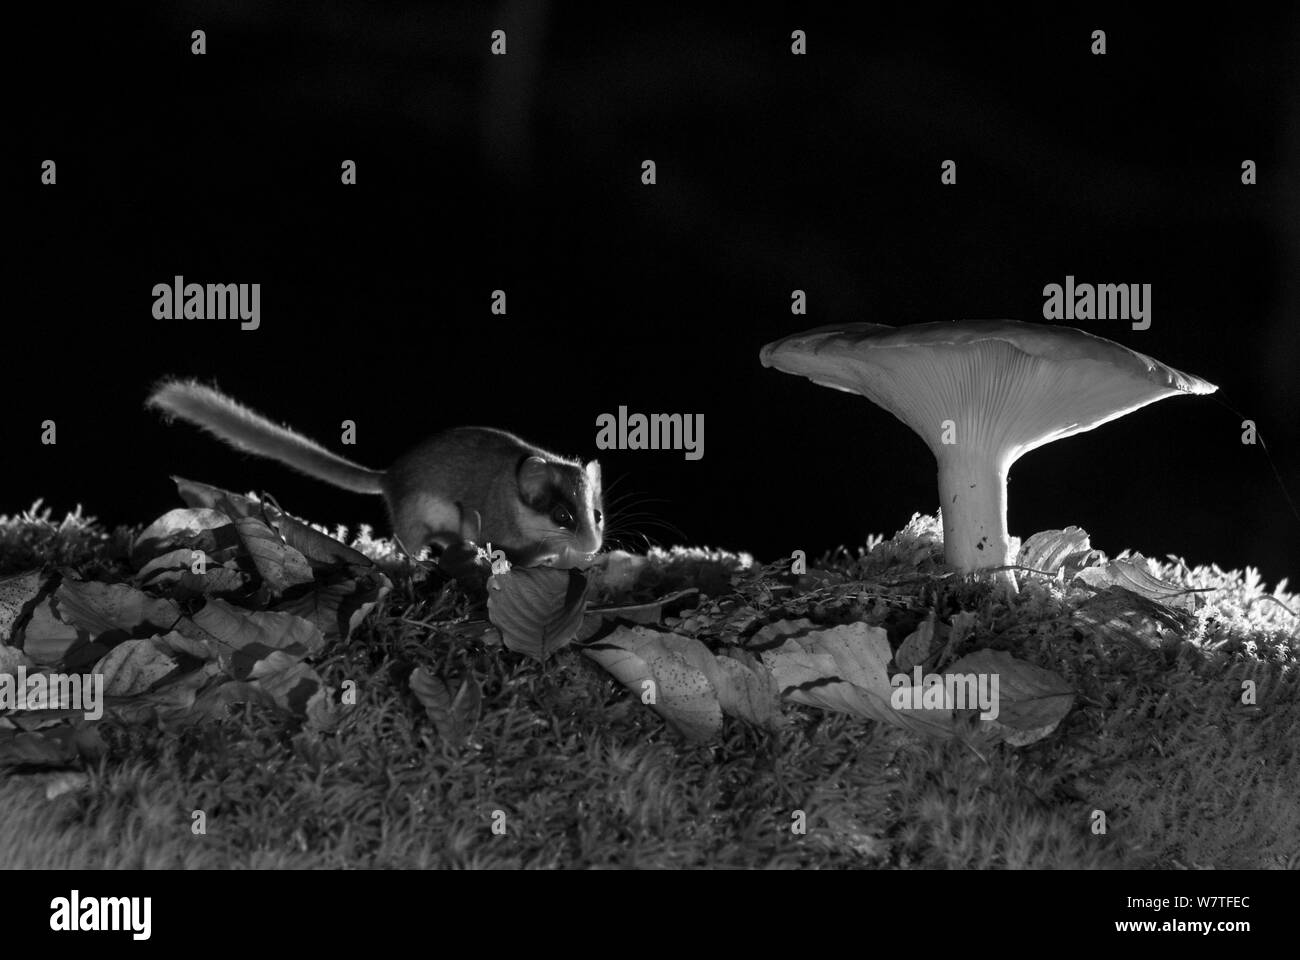 Wald Siebenschläfer (Dryomys nitedula) Fütterung auf Köder (pear) neben Pilz, in der Nacht, mit Infrarot Fernbedienung Kamera trap, Slowenien, Oktober getroffen. Stockfoto